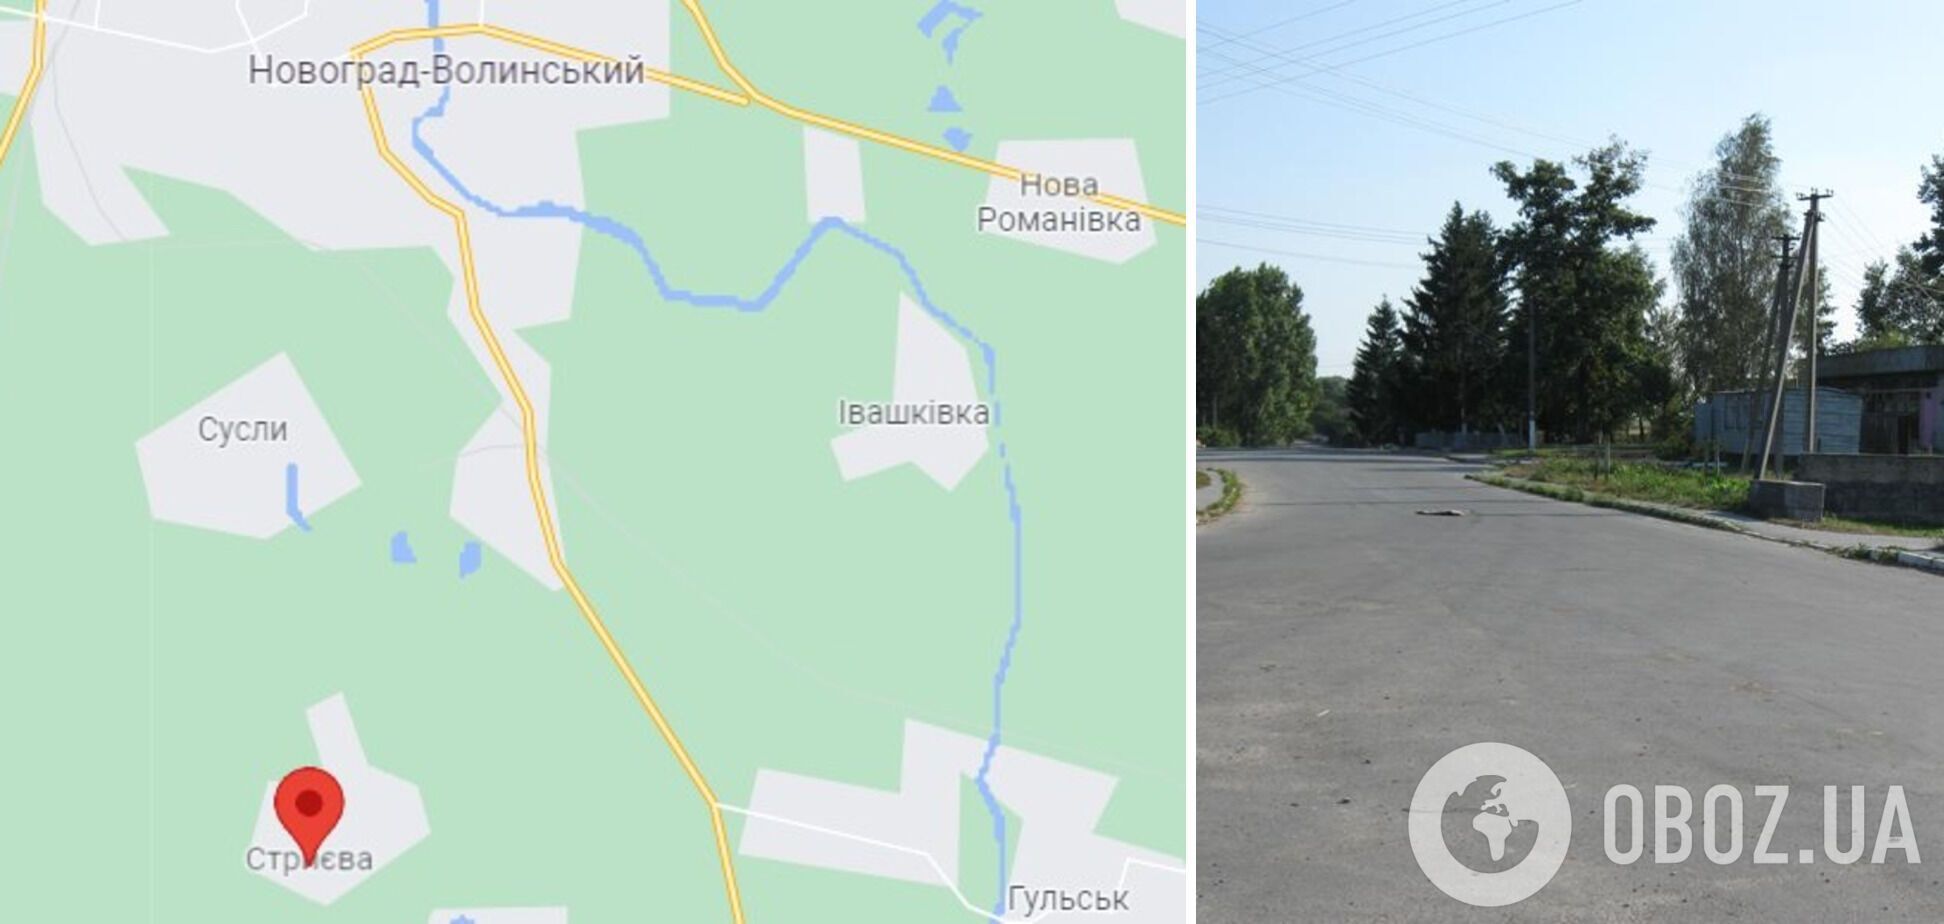 Случай произошел в селе Стрыева Новоград-Волынского района